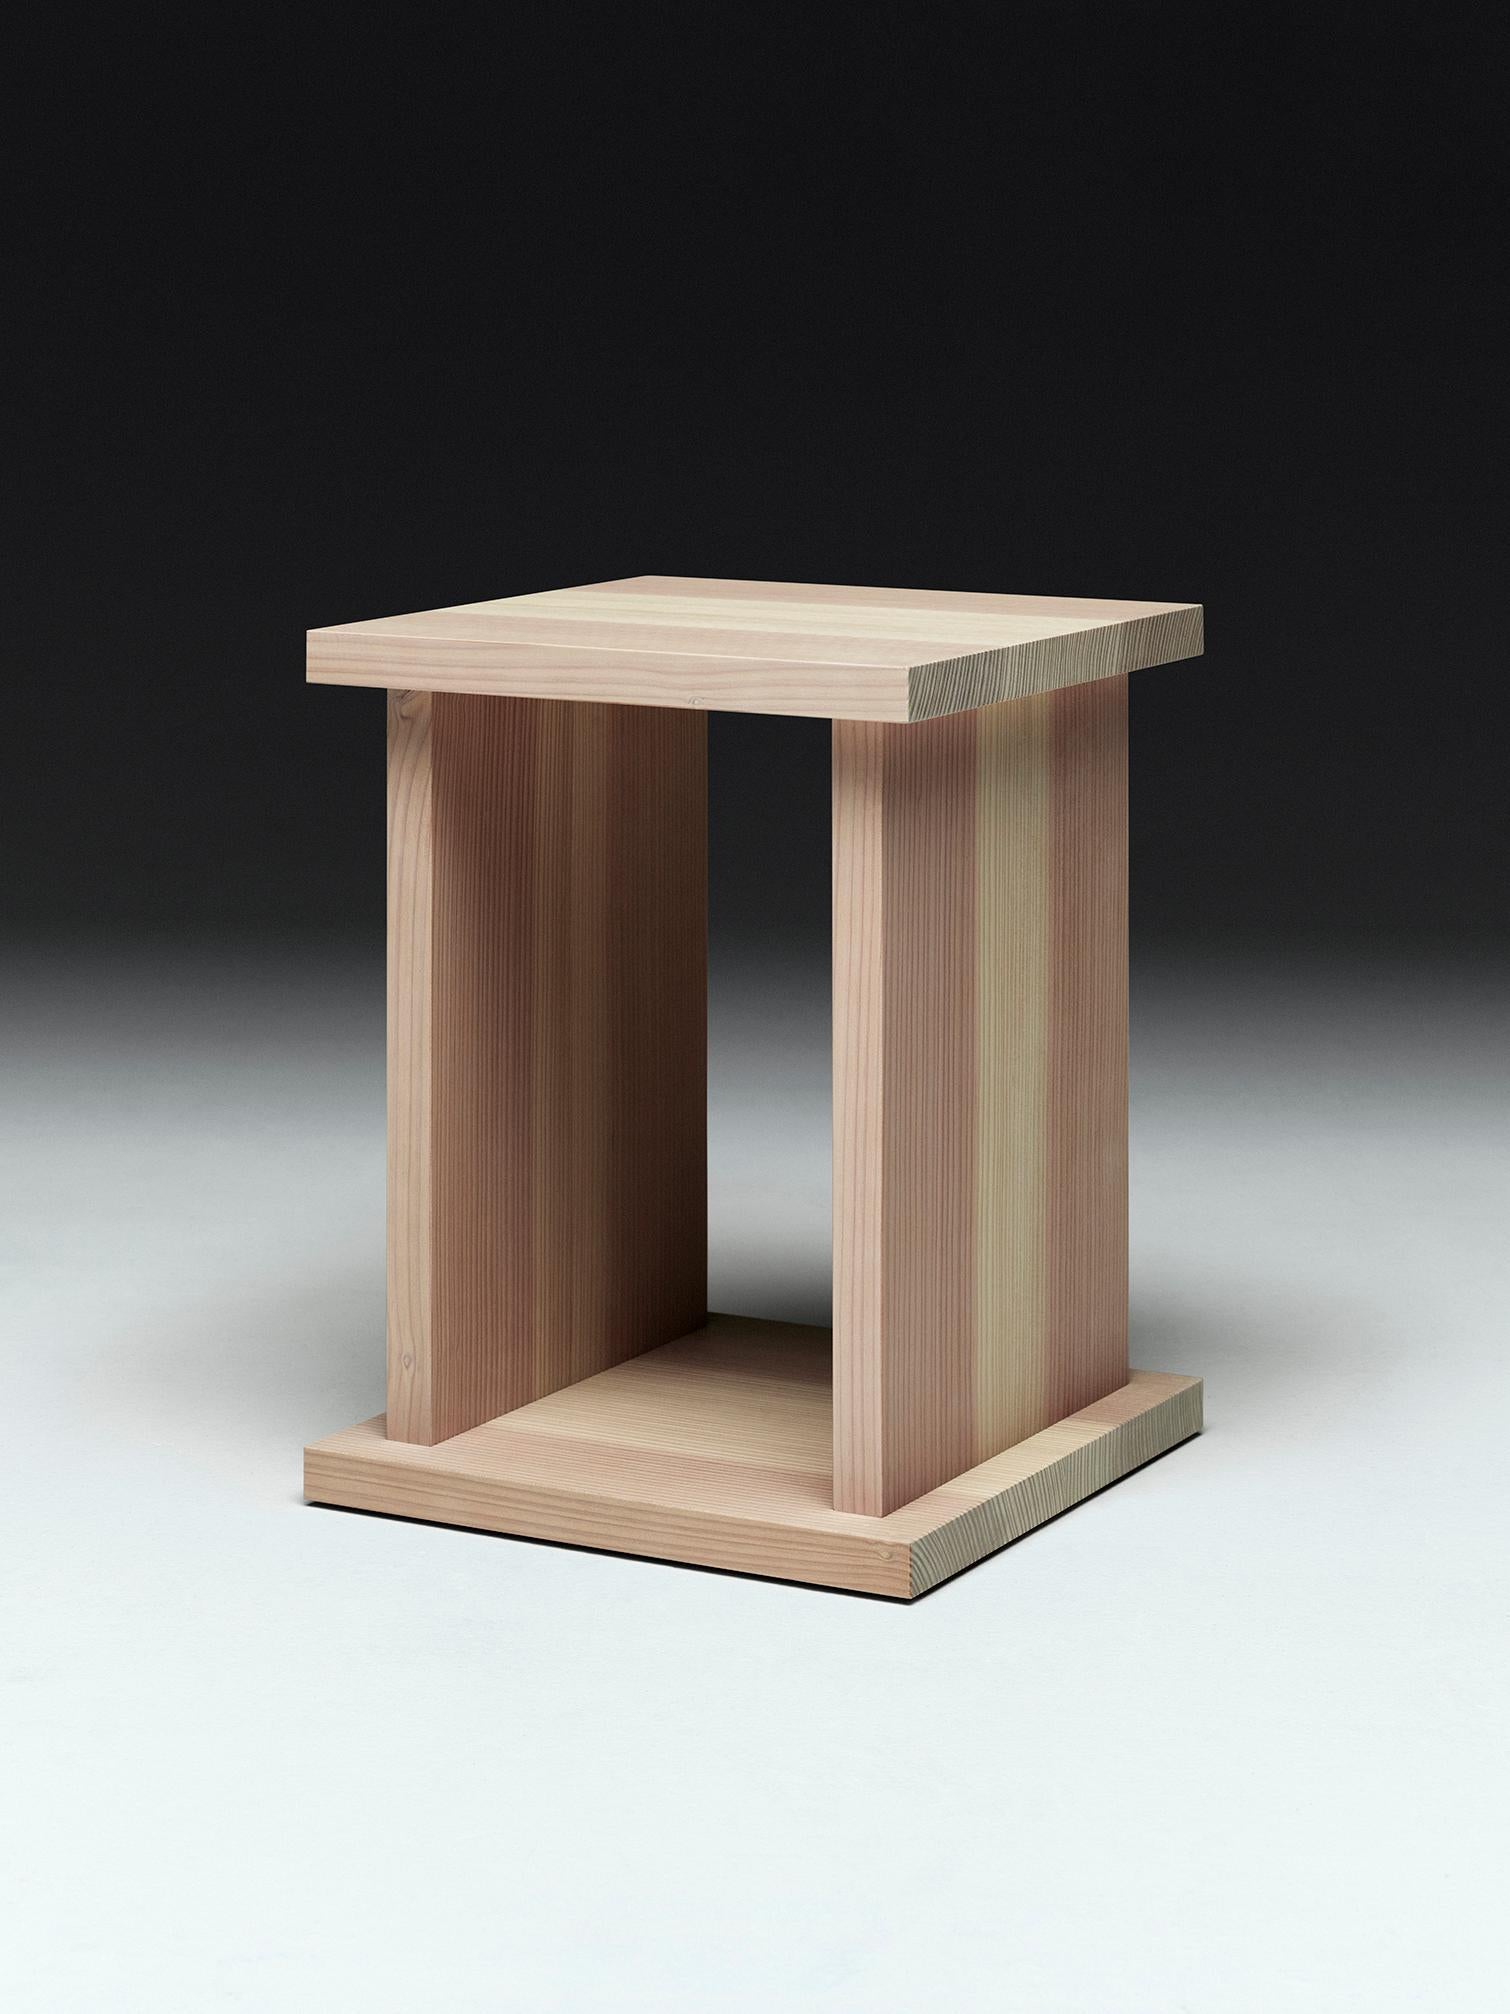 
Voici la table de chevet de Wannberg, une création innovante fabriquée à partir de bois excédentaire obtenu lors de la production du lit flottant, garantissant ainsi une utilisation optimale des ressources. Son design minimaliste s'intègre